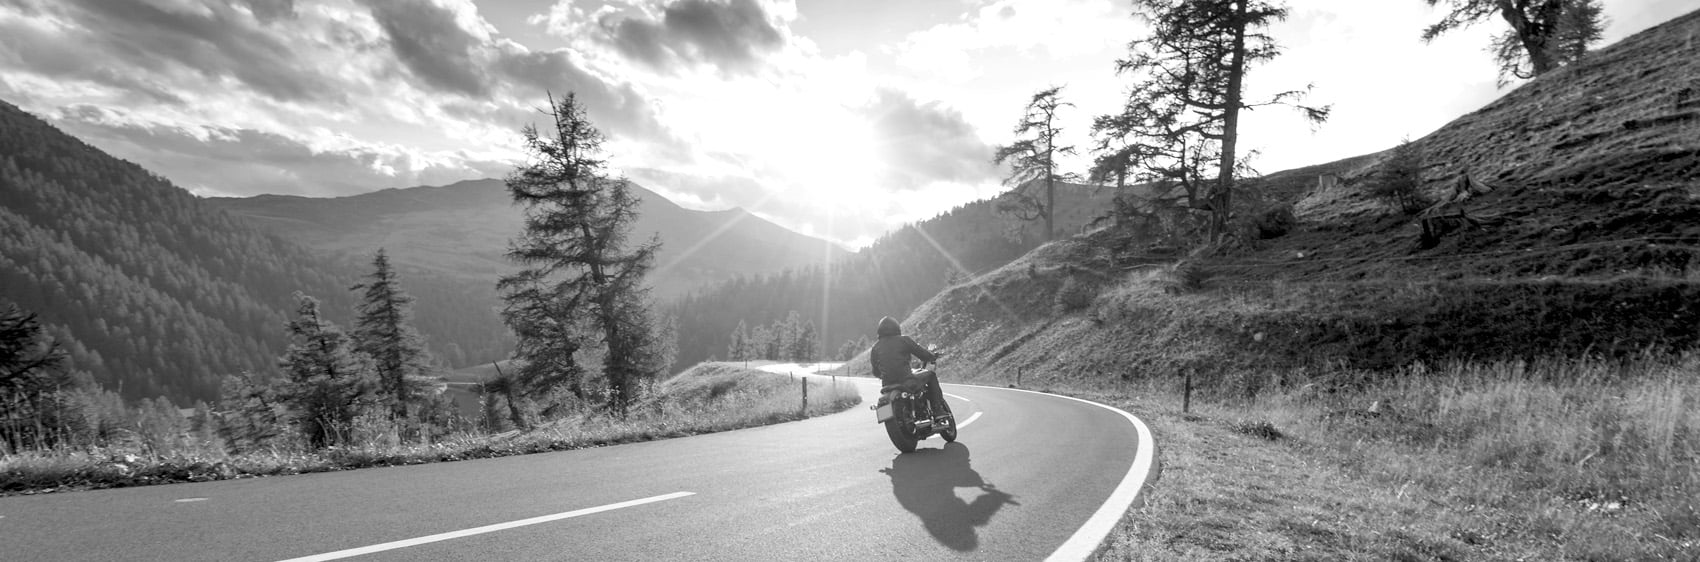 moto roulant sur route de campagne